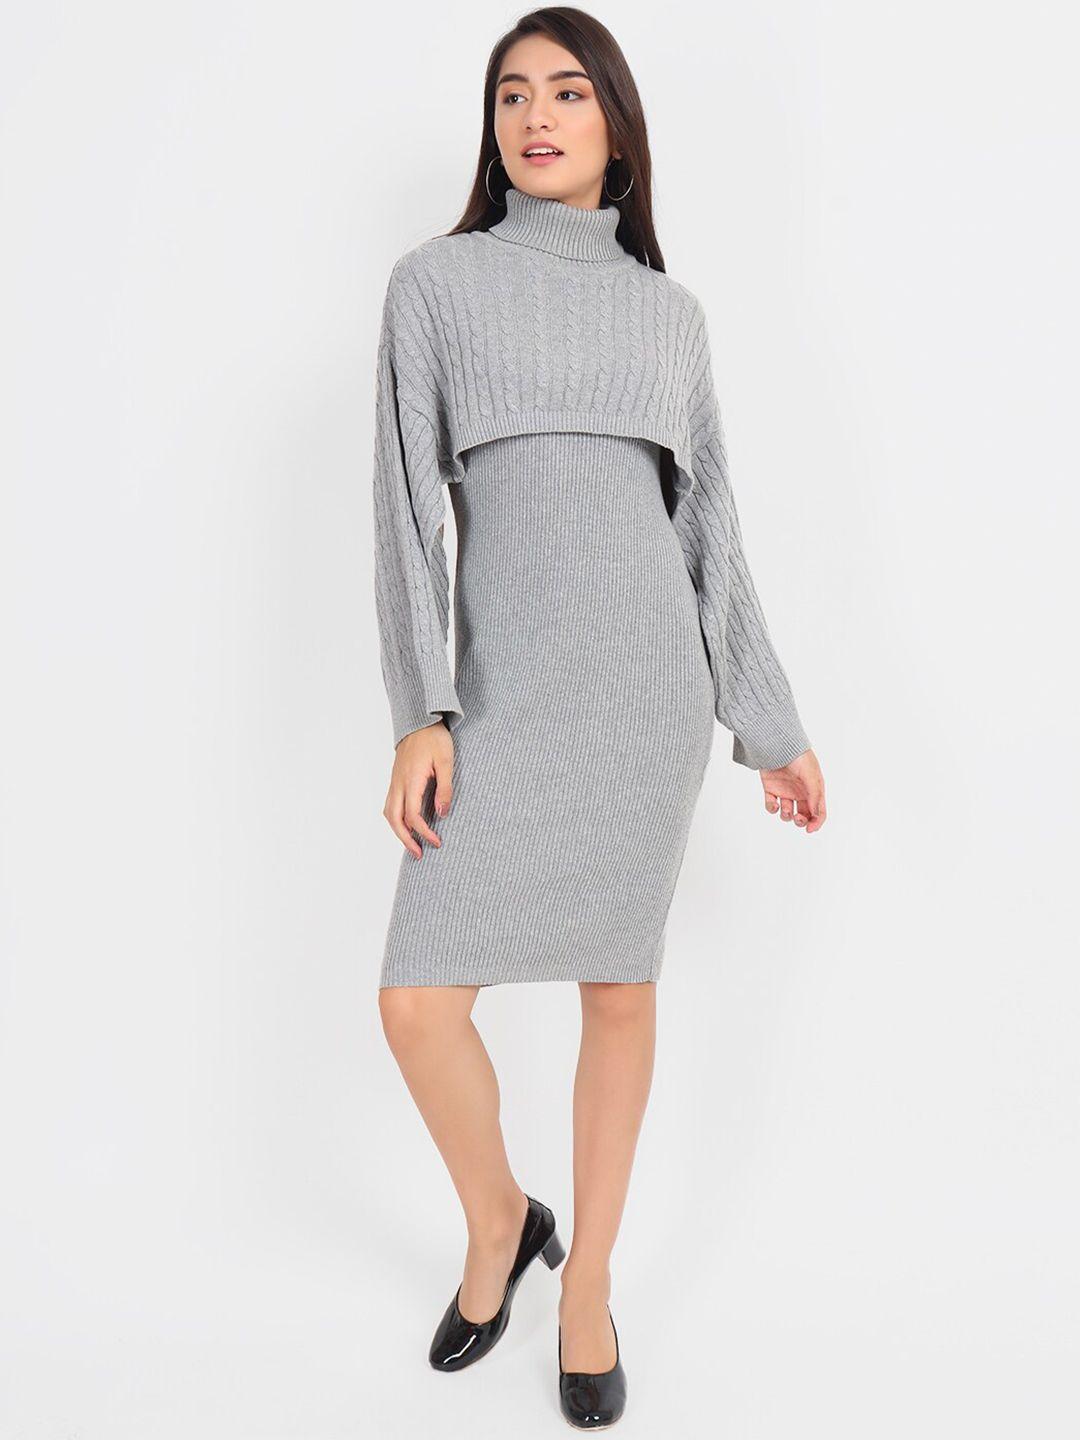 joe hazel grey sweater dress